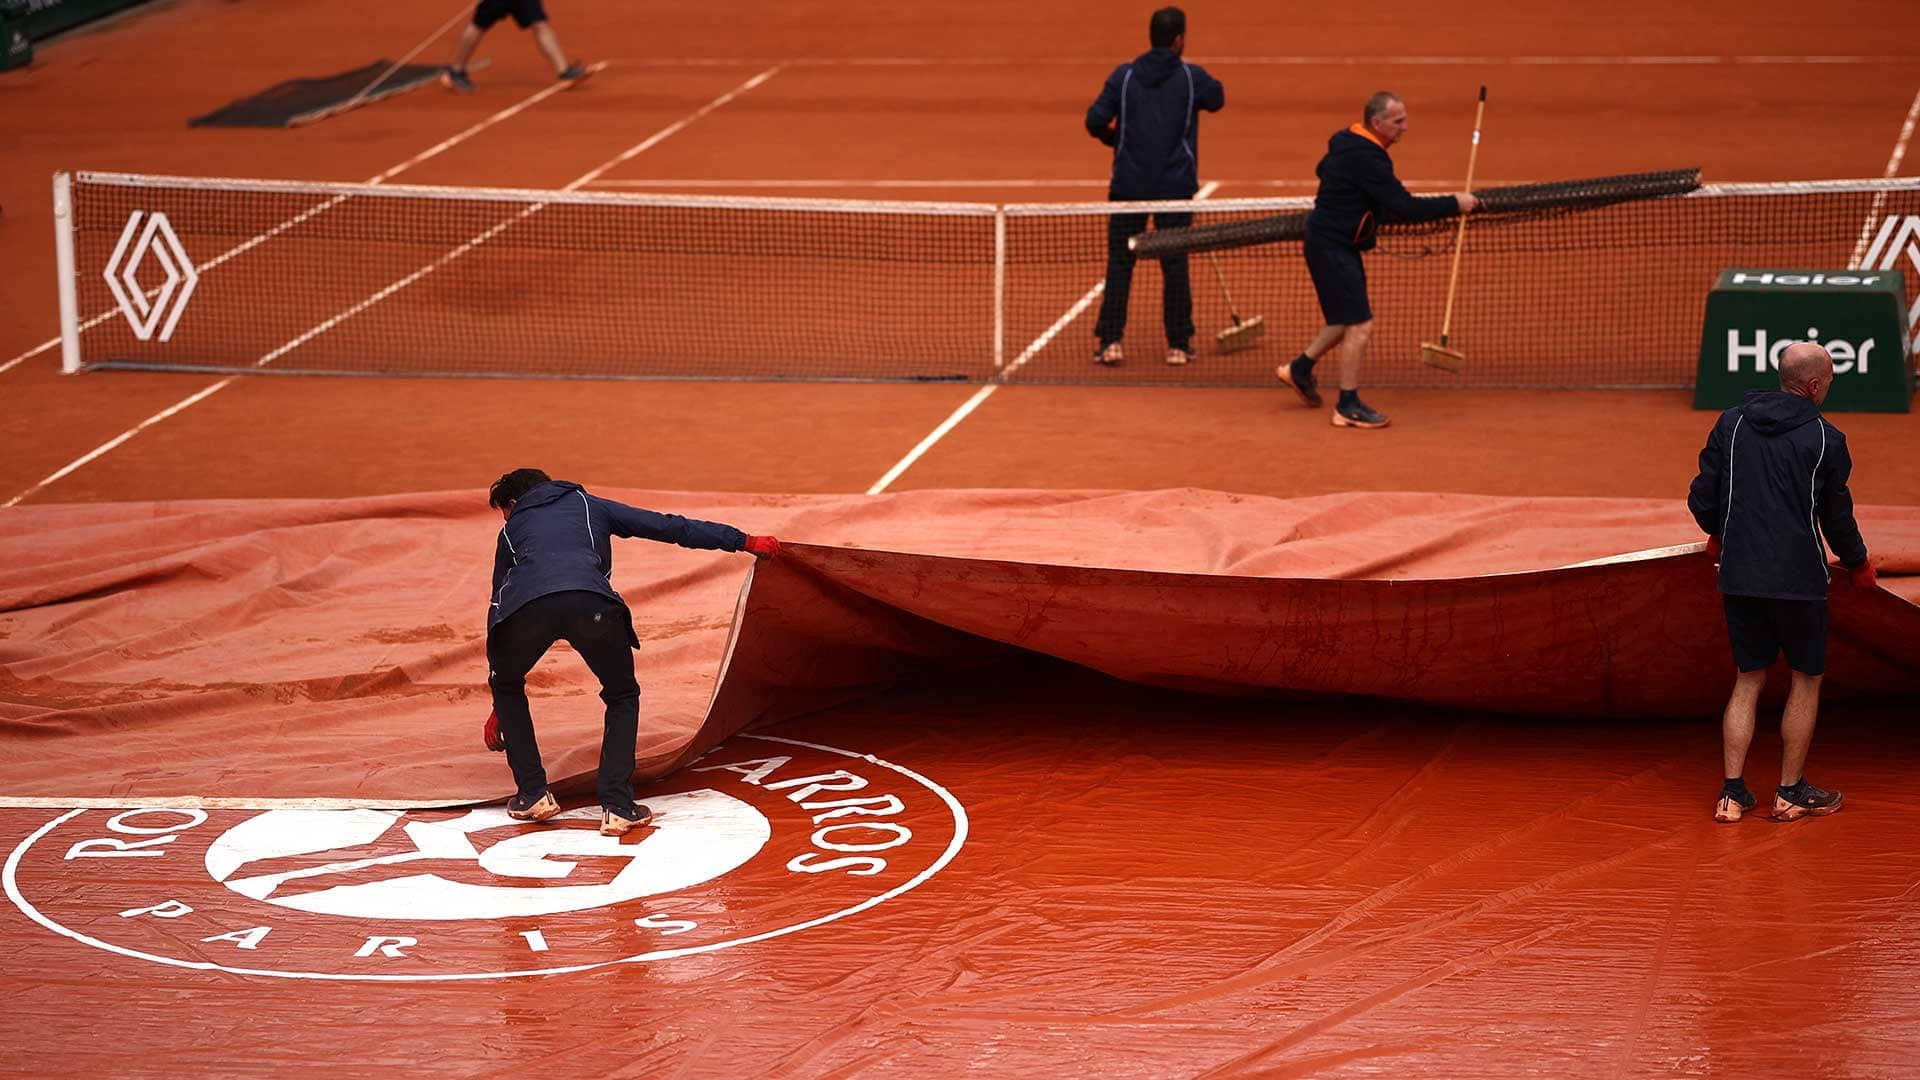 Play resumes at Roland Garros following rain